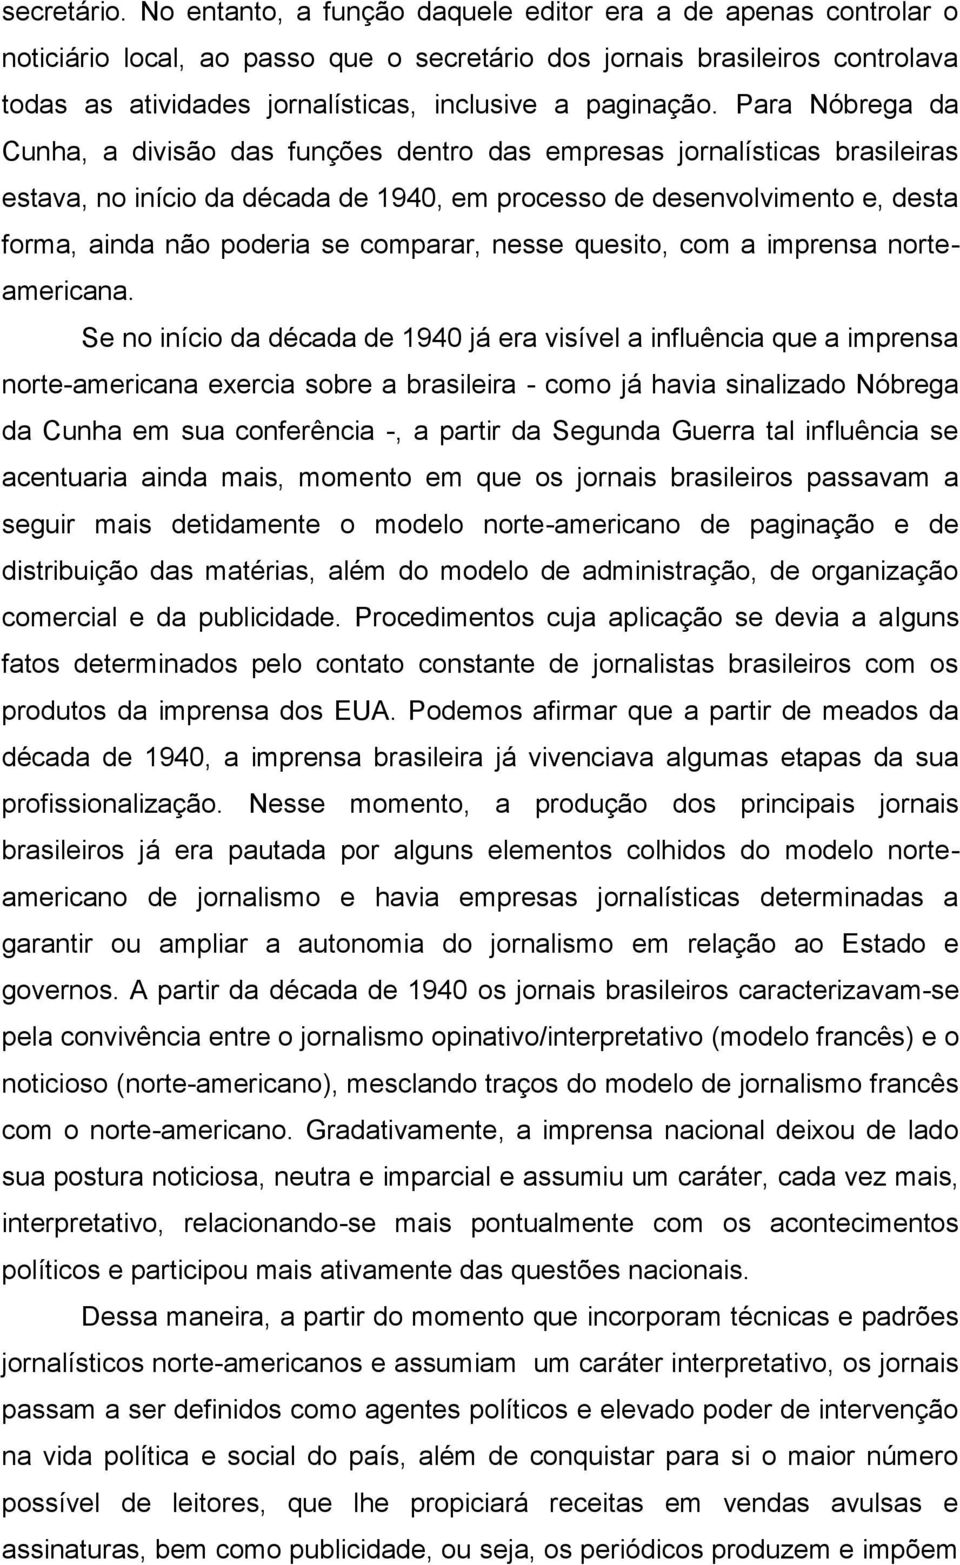 Para Nóbrega da Cunha, a divisão das funções dentro das empresas jornalísticas brasileiras estava, no início da década de 1940, em processo de desenvolvimento e, desta forma, ainda não poderia se